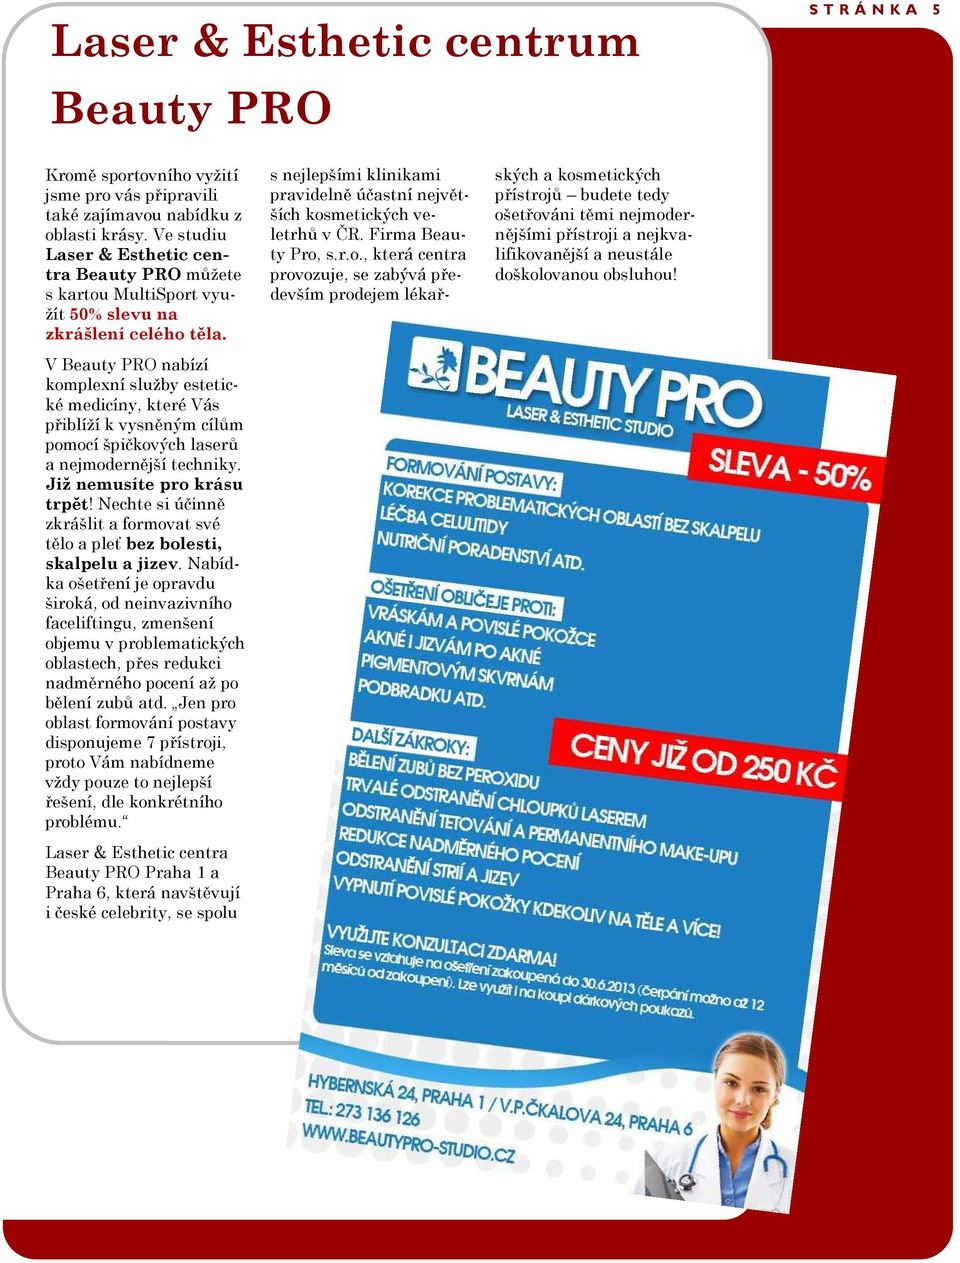 V Beauty PRO nabízí komplexní služby estetické medicíny, které Vás přiblíží k vysněným cílům pomocí špičkových laserů a nejmodernější techniky. Již nemusíte pro krásu trpět!